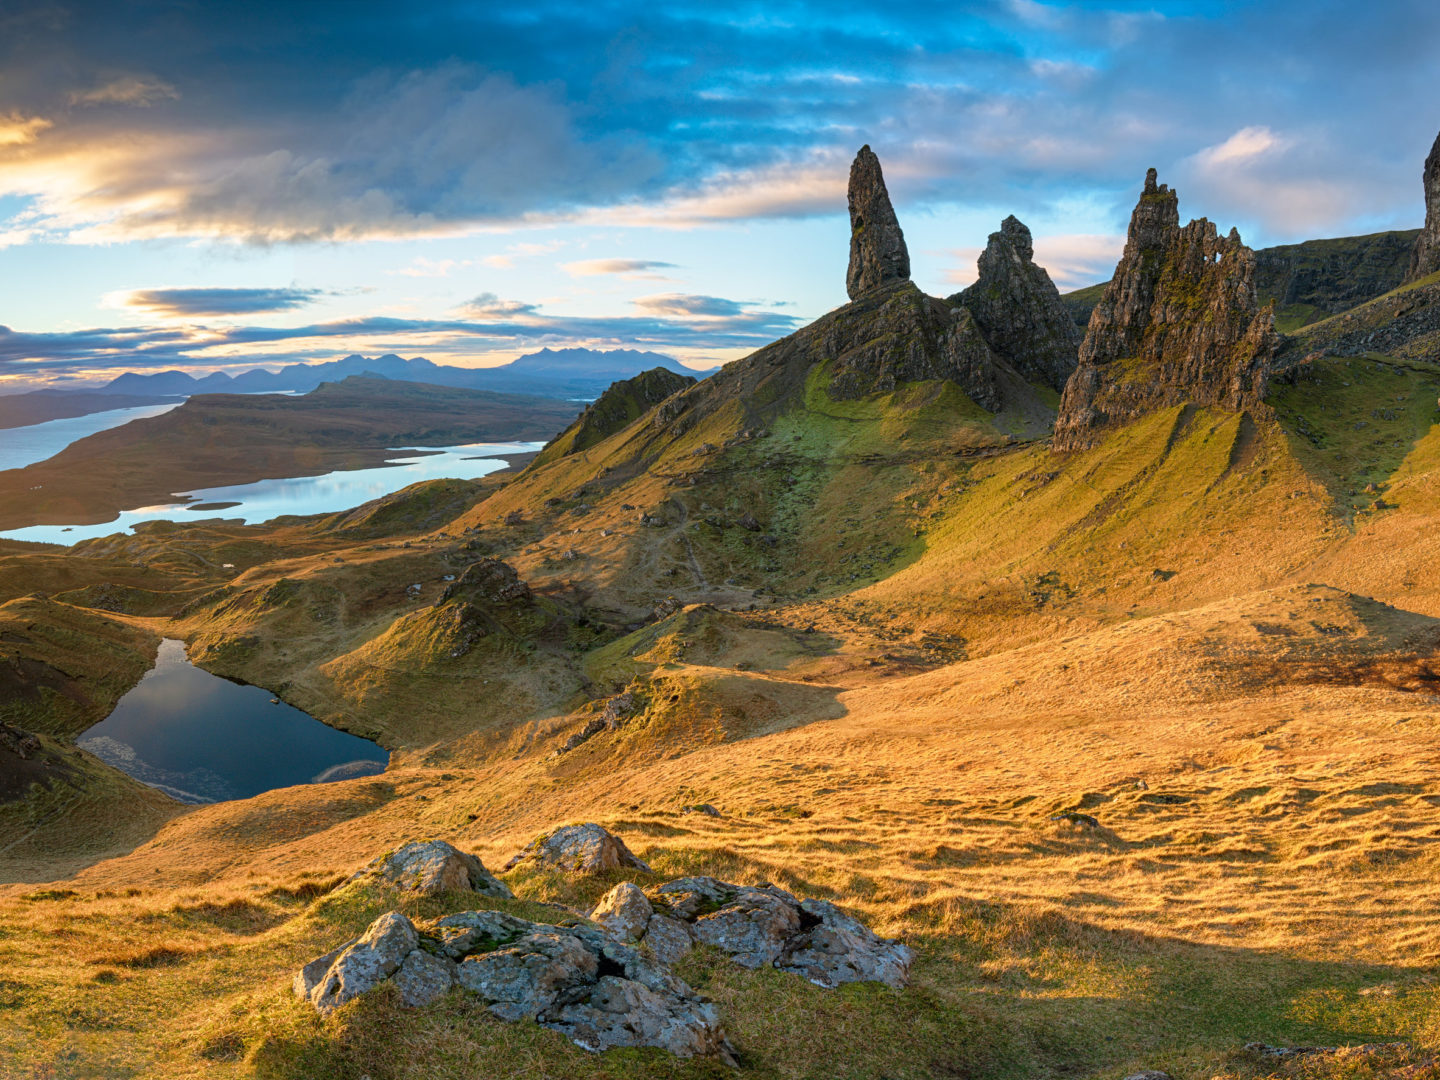 beauty spots in Scotland - the isle of Skye